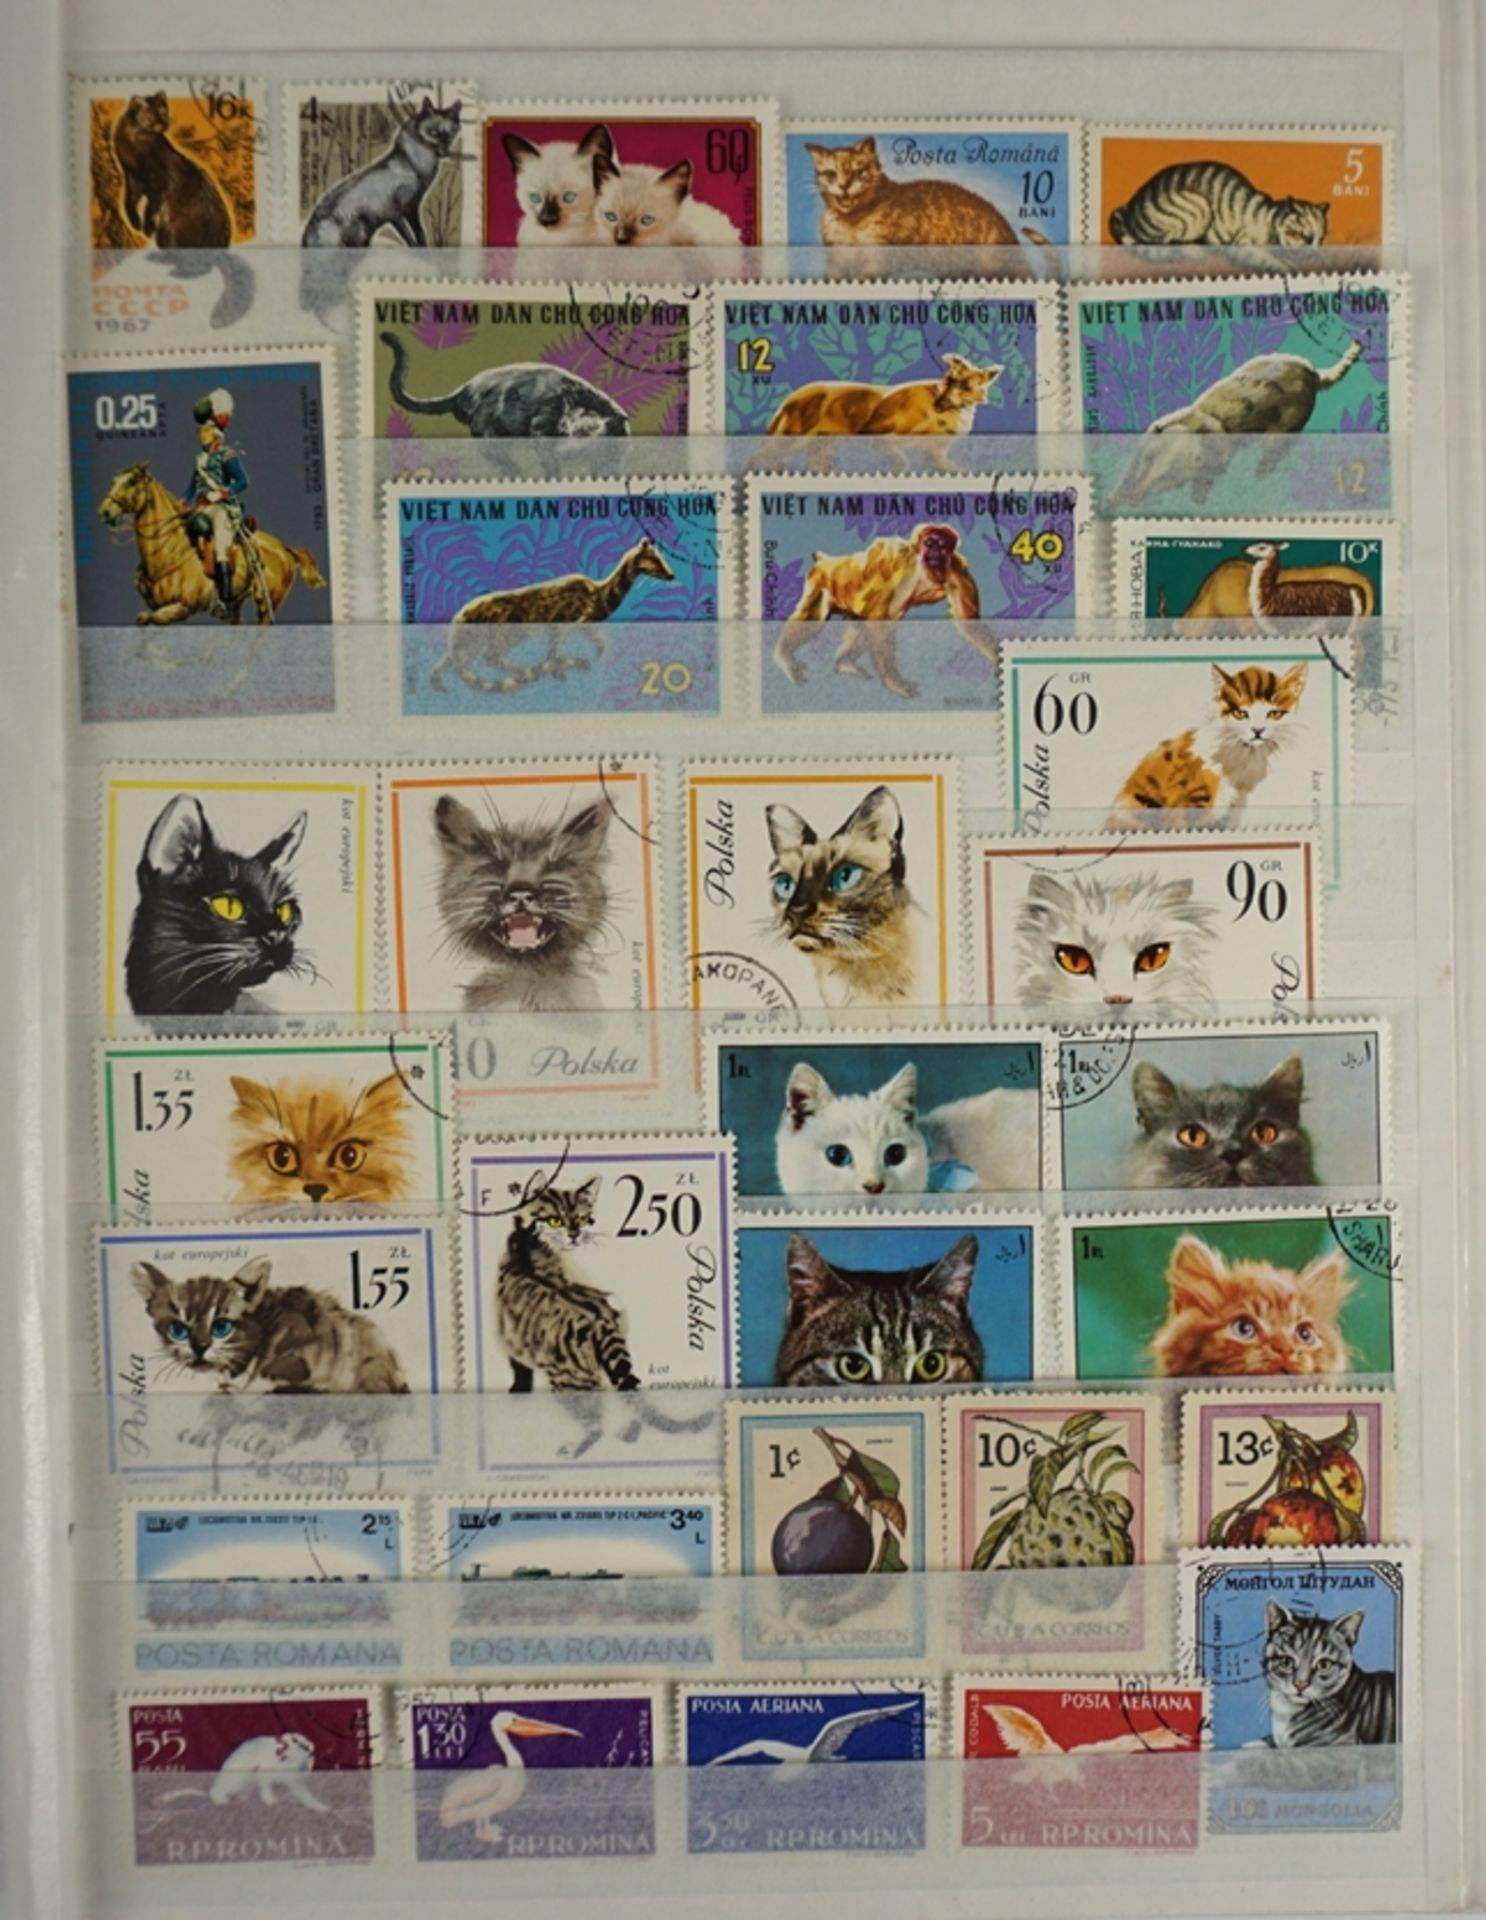 Sammlung von ca. 2.300 Briefmarken alle Welt, unterschiedliche Motive, im Steckalbum